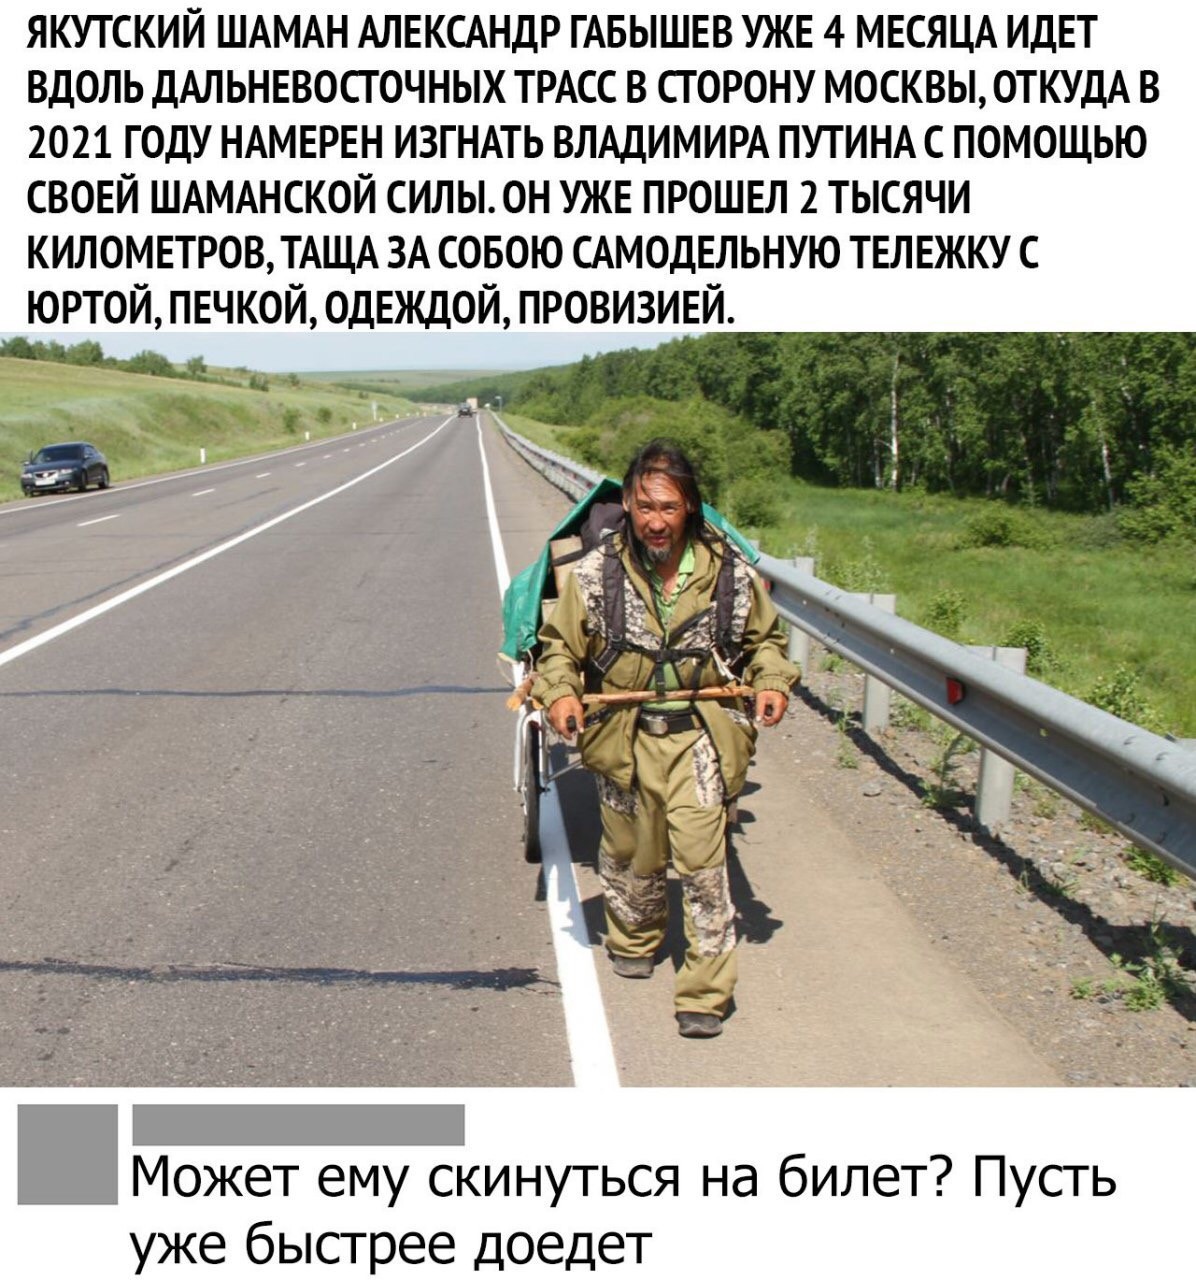 Почему шаман не был на митинге. Якутский шаман Габышев. Шаман идёт в Москву изгнать Путина.